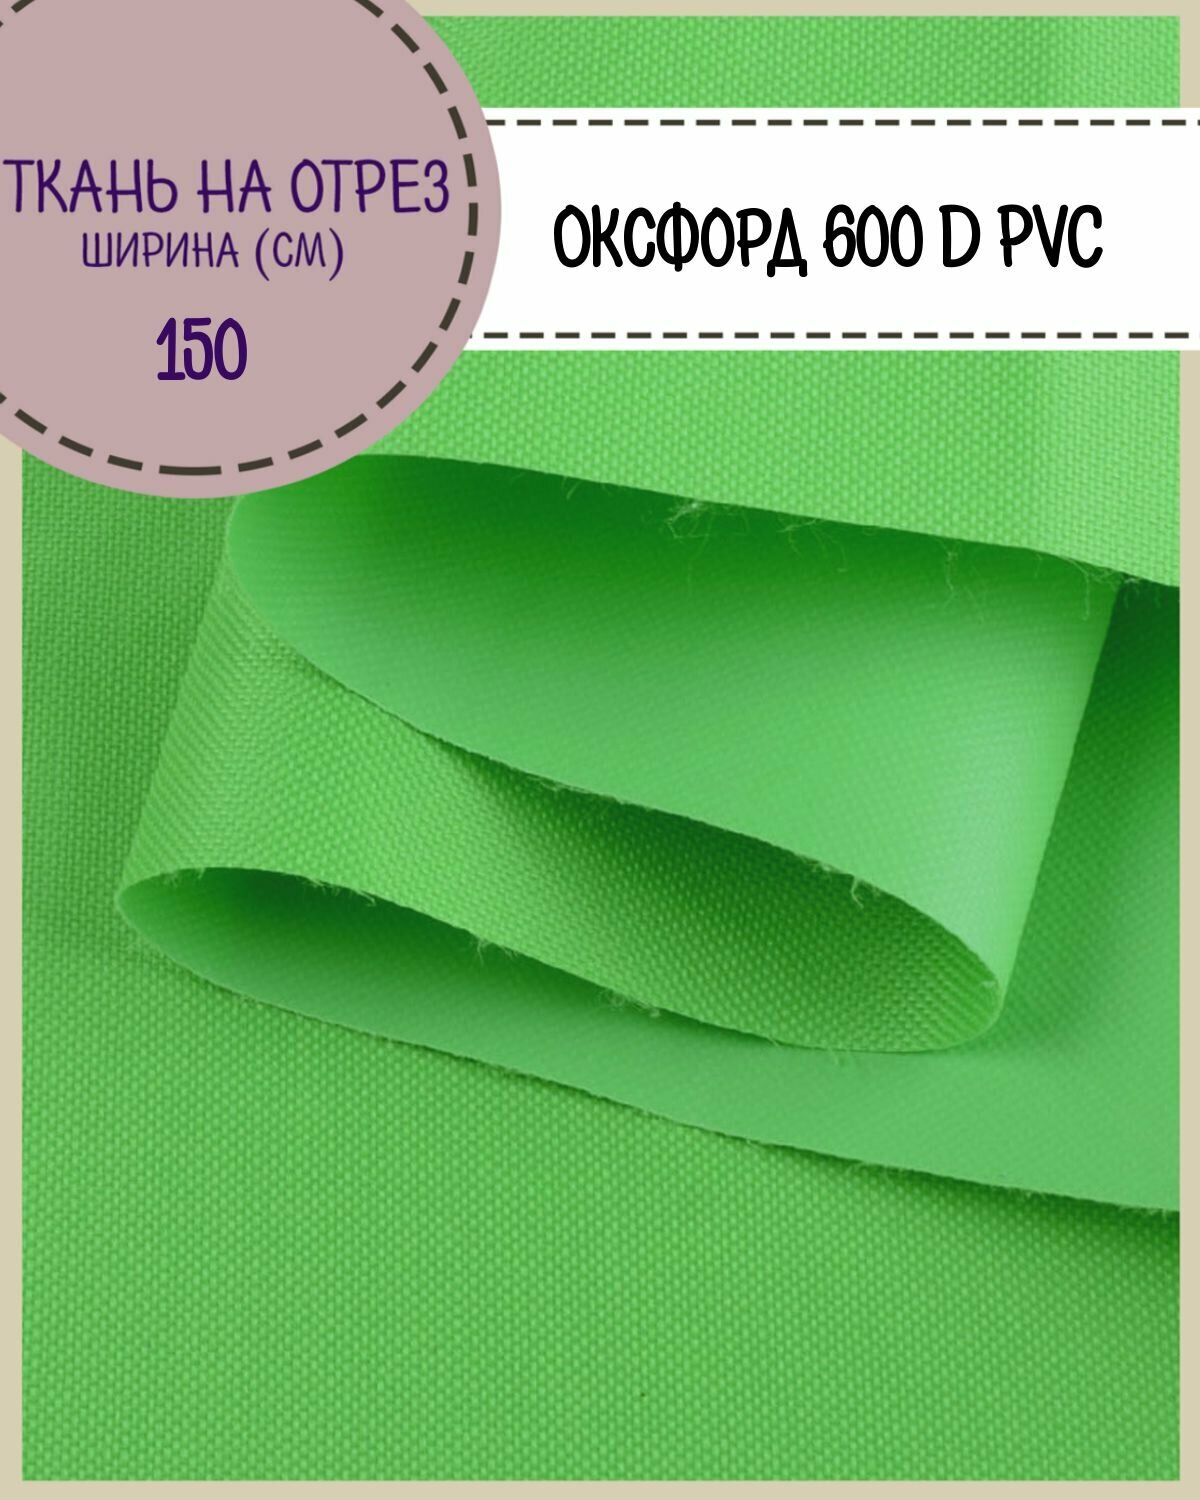 Ткань Оксфорд Oxford 600D PVC (ПВХ), водоотталкивающая, цв. салатовый, на отрез, цена за пог. метр